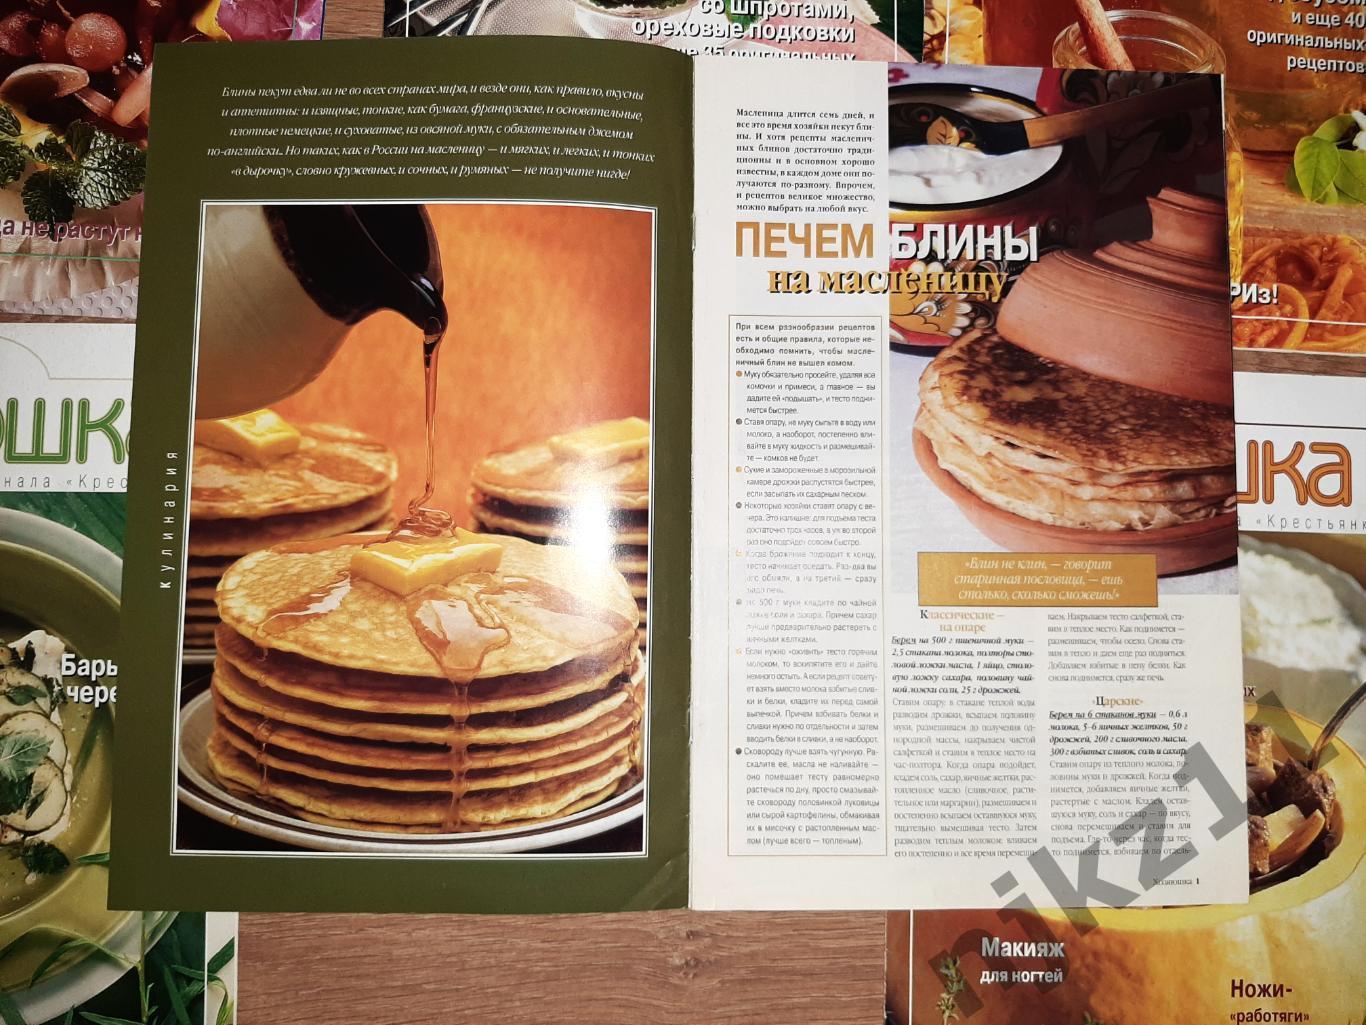 7 журналов ХОЗЯЮШКА приложение к Крестьянке 2001-03г.г. рецепты блюд 1